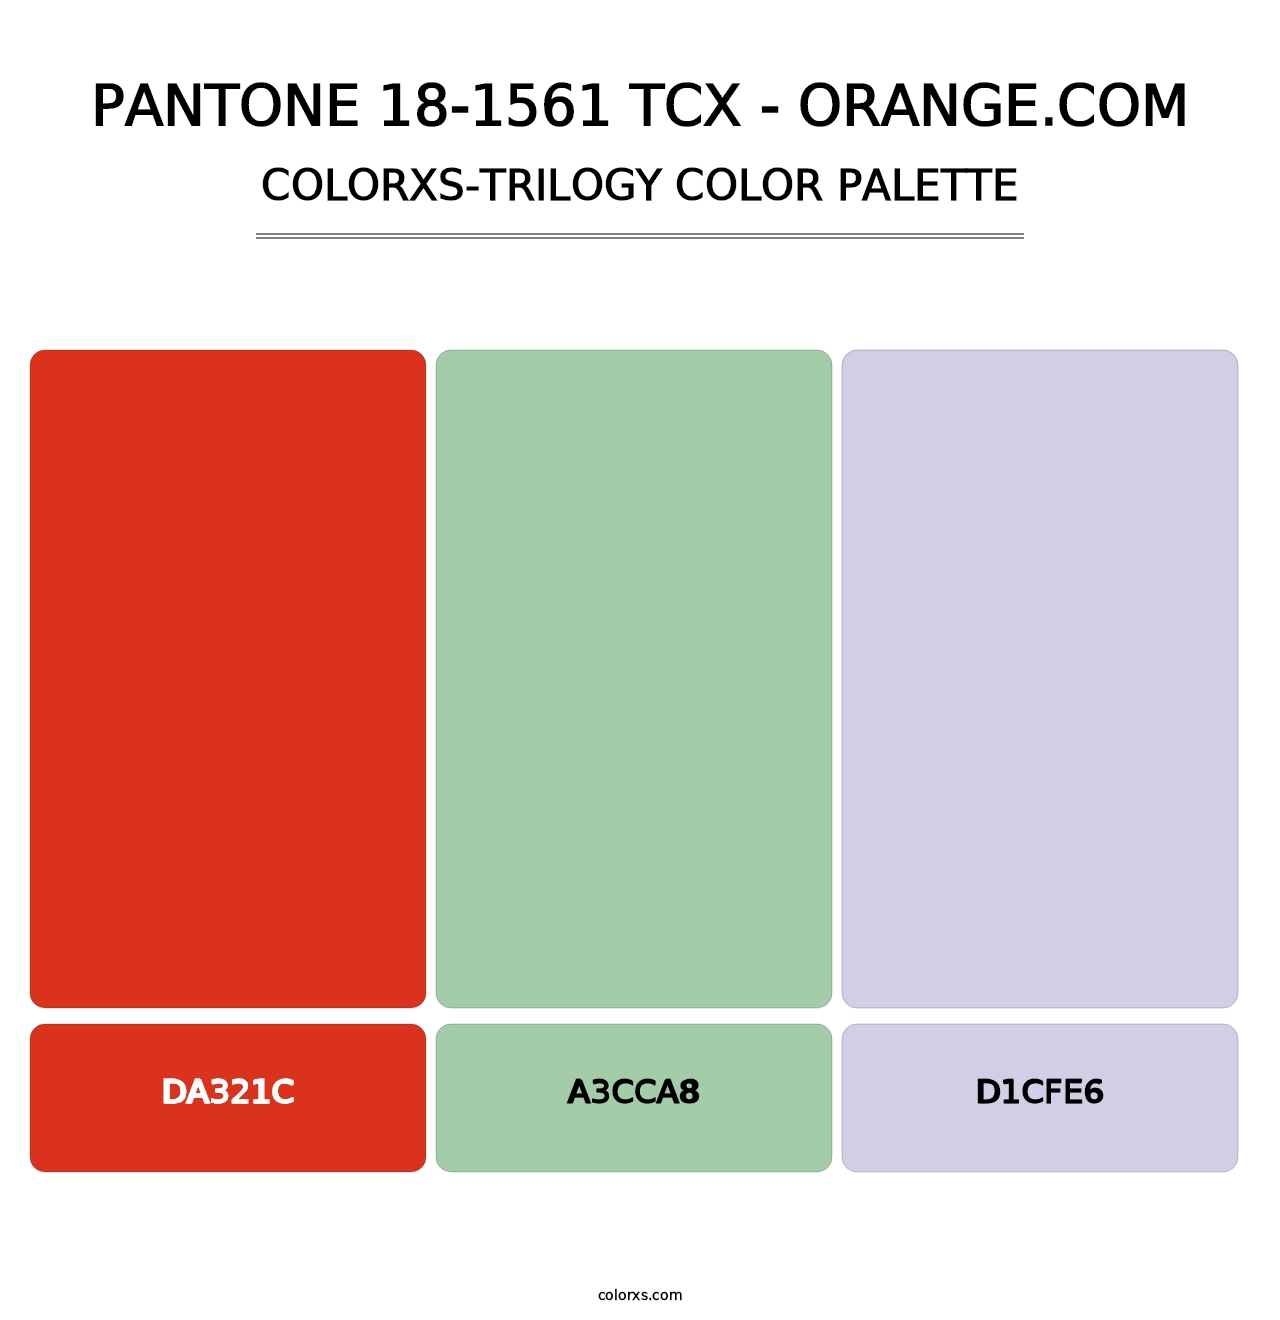 PANTONE 18-1561 TCX - Orange.com - Colorxs Trilogy Palette